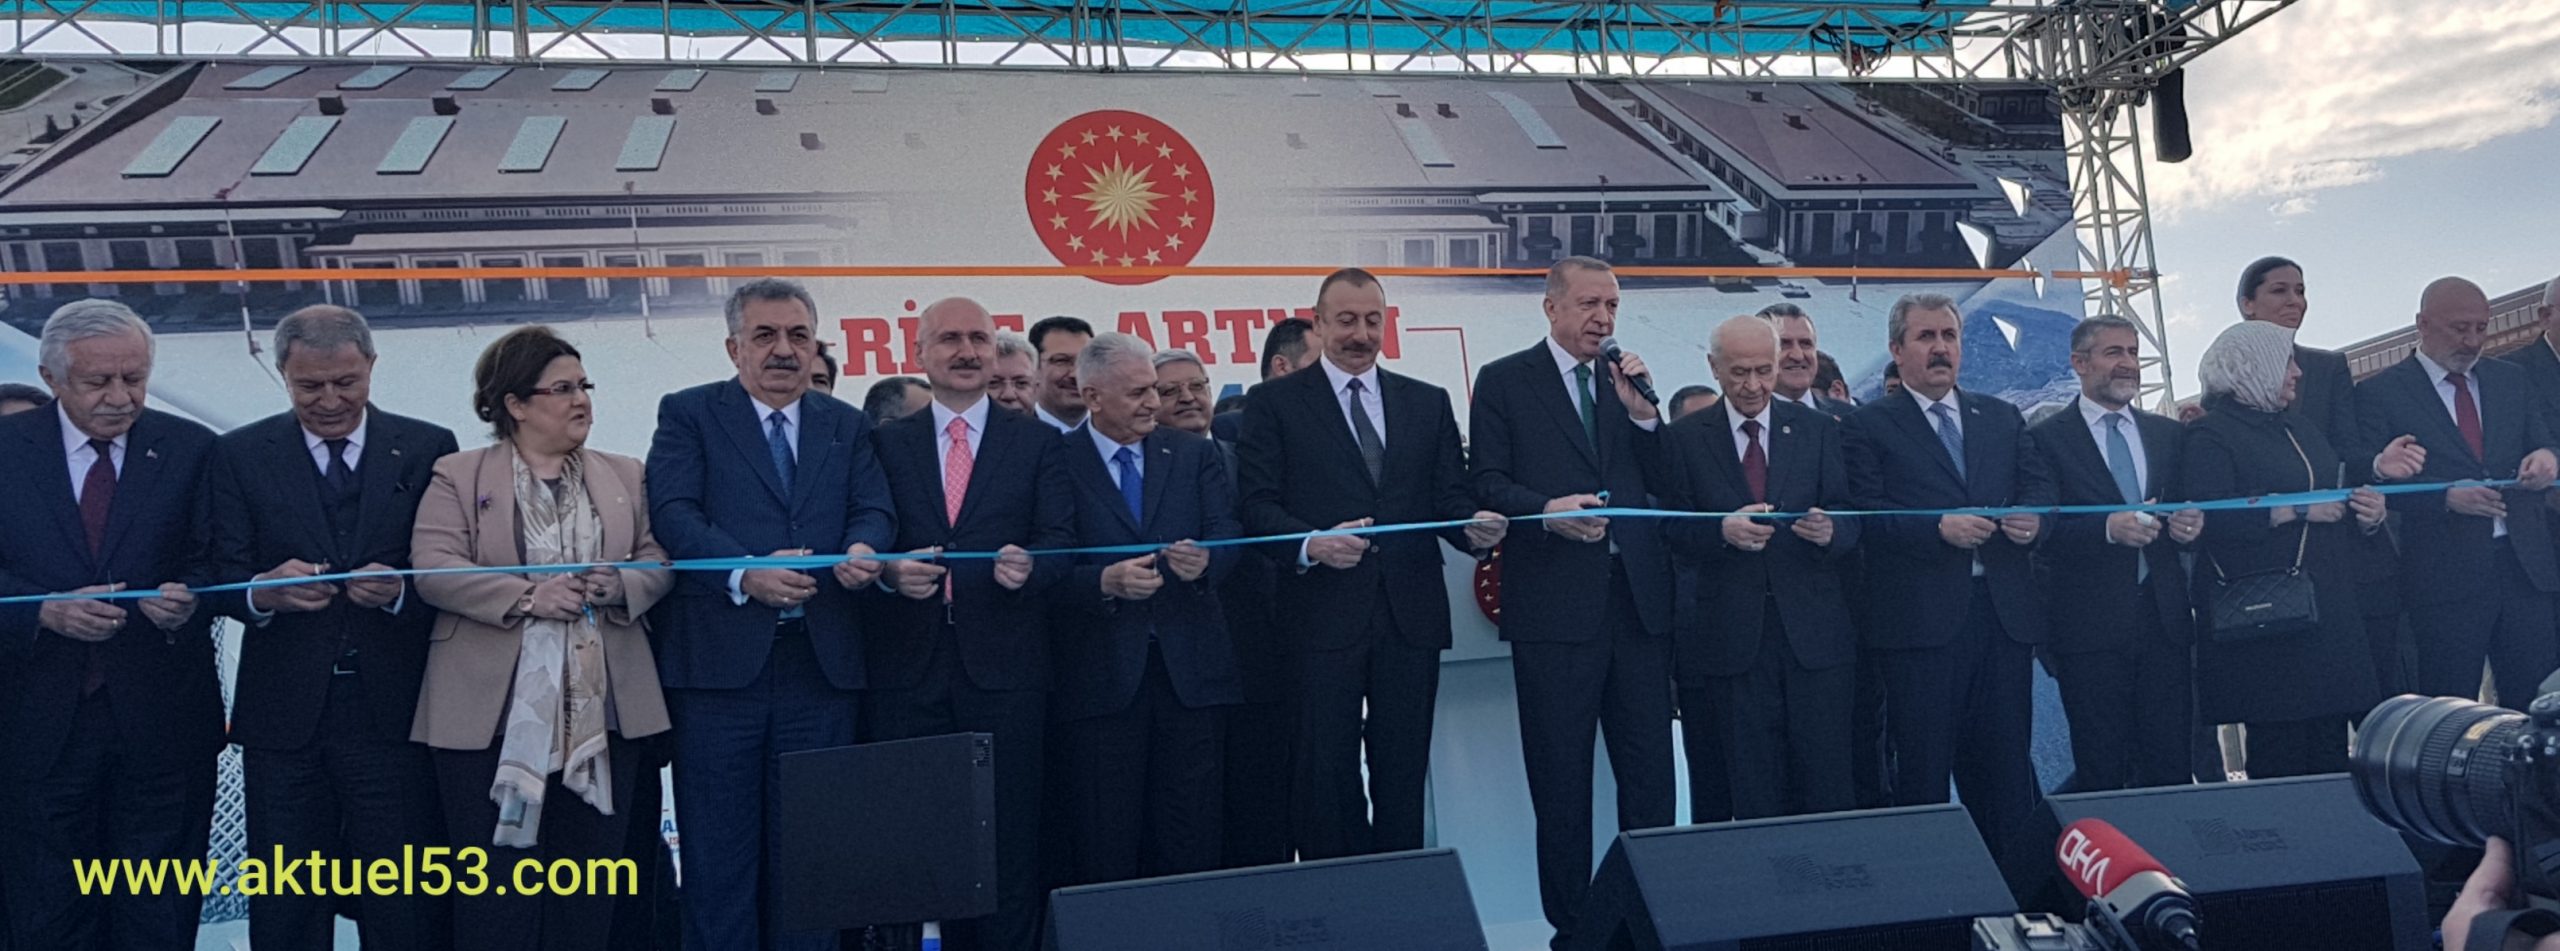 Rize Artvin Hava Alanı, Cumhurbaşkanı Recep Tayyip Erdoğan Tarafından Açıldı